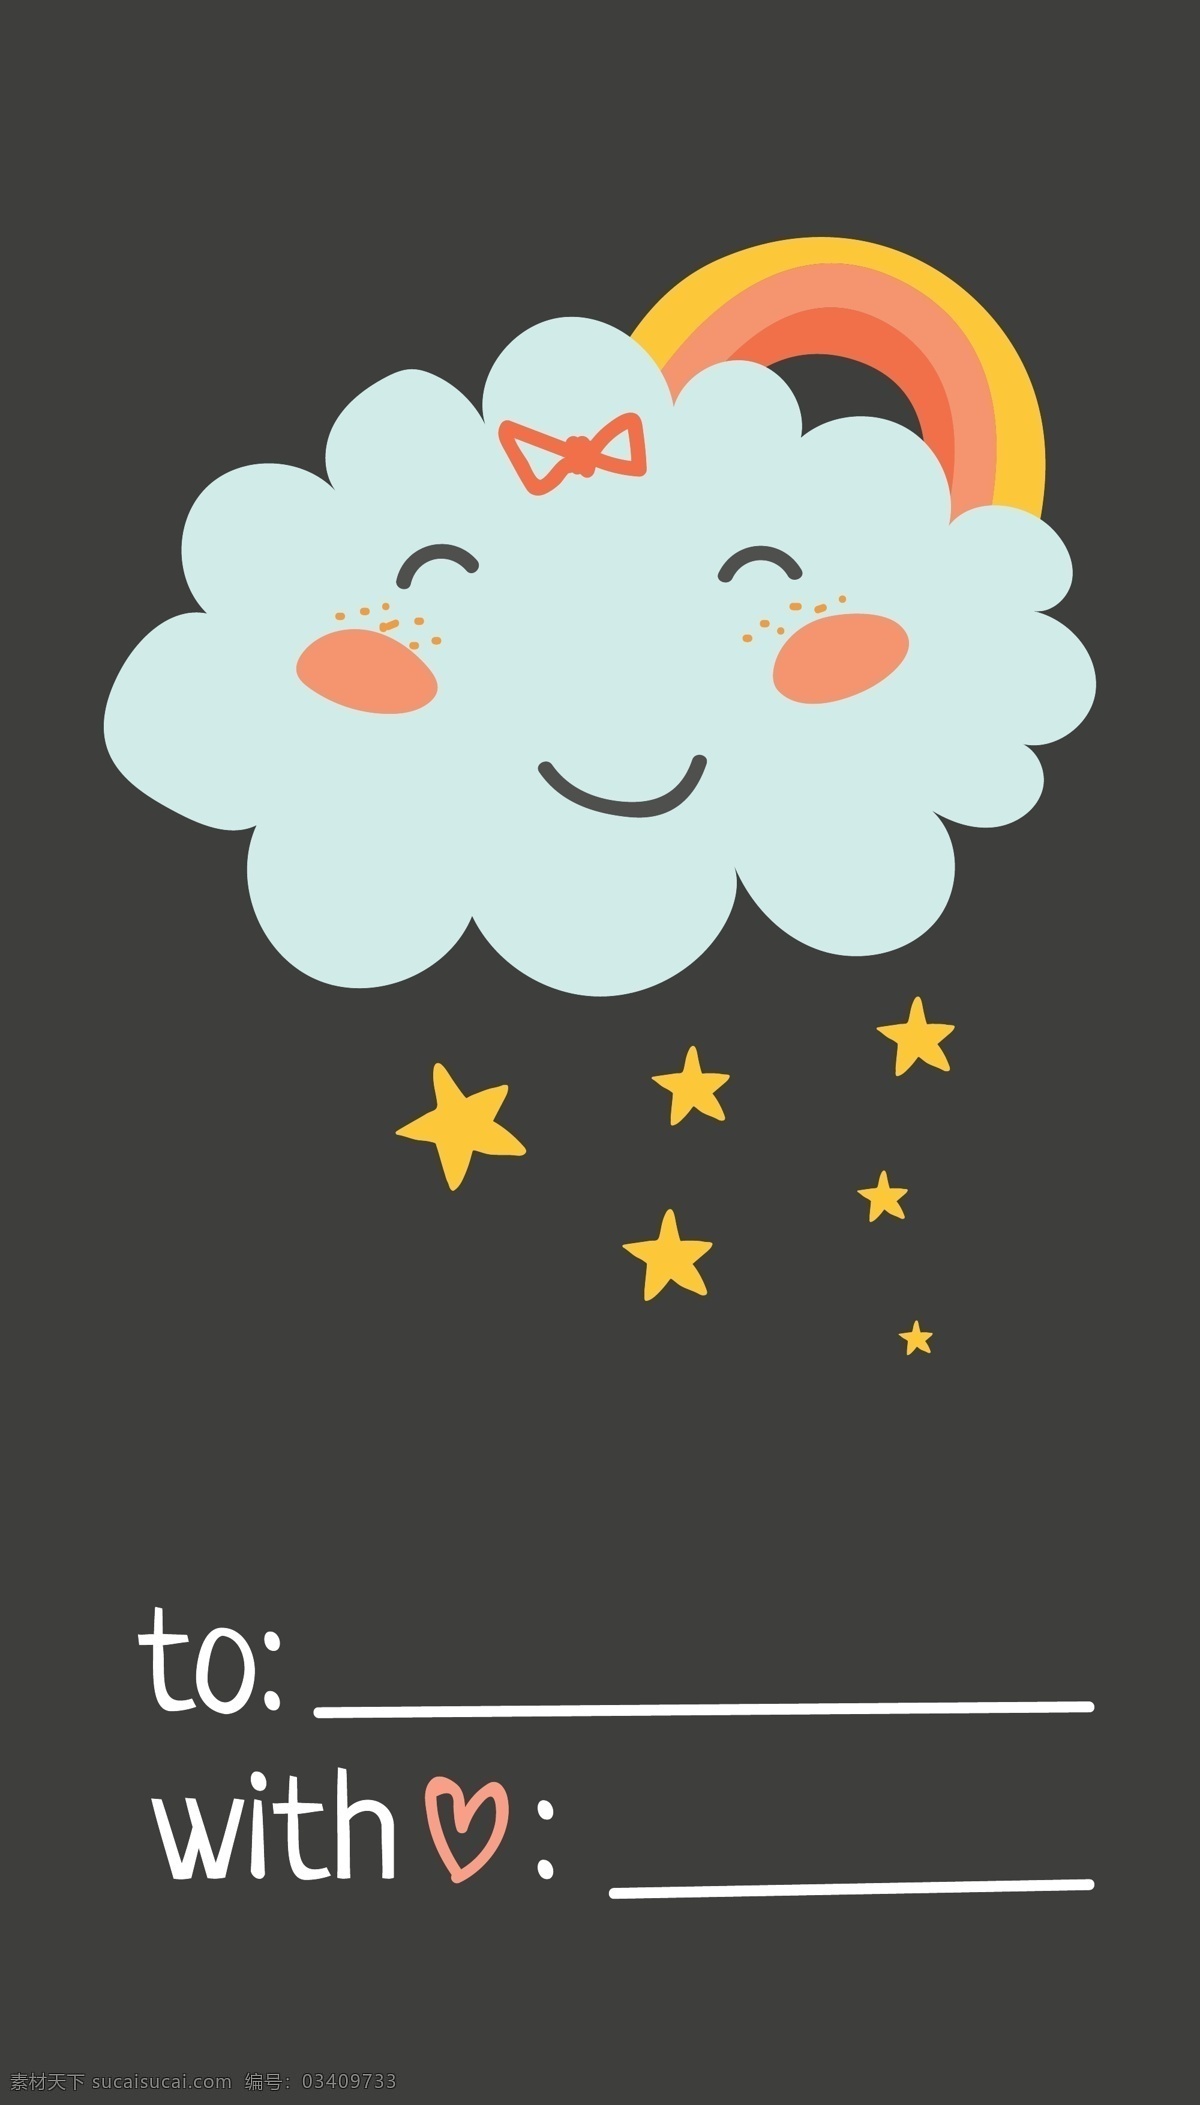 可爱 微笑 云朵 彩虹 卡通 标签 矢量 矢量素材 背景素材 设计素材